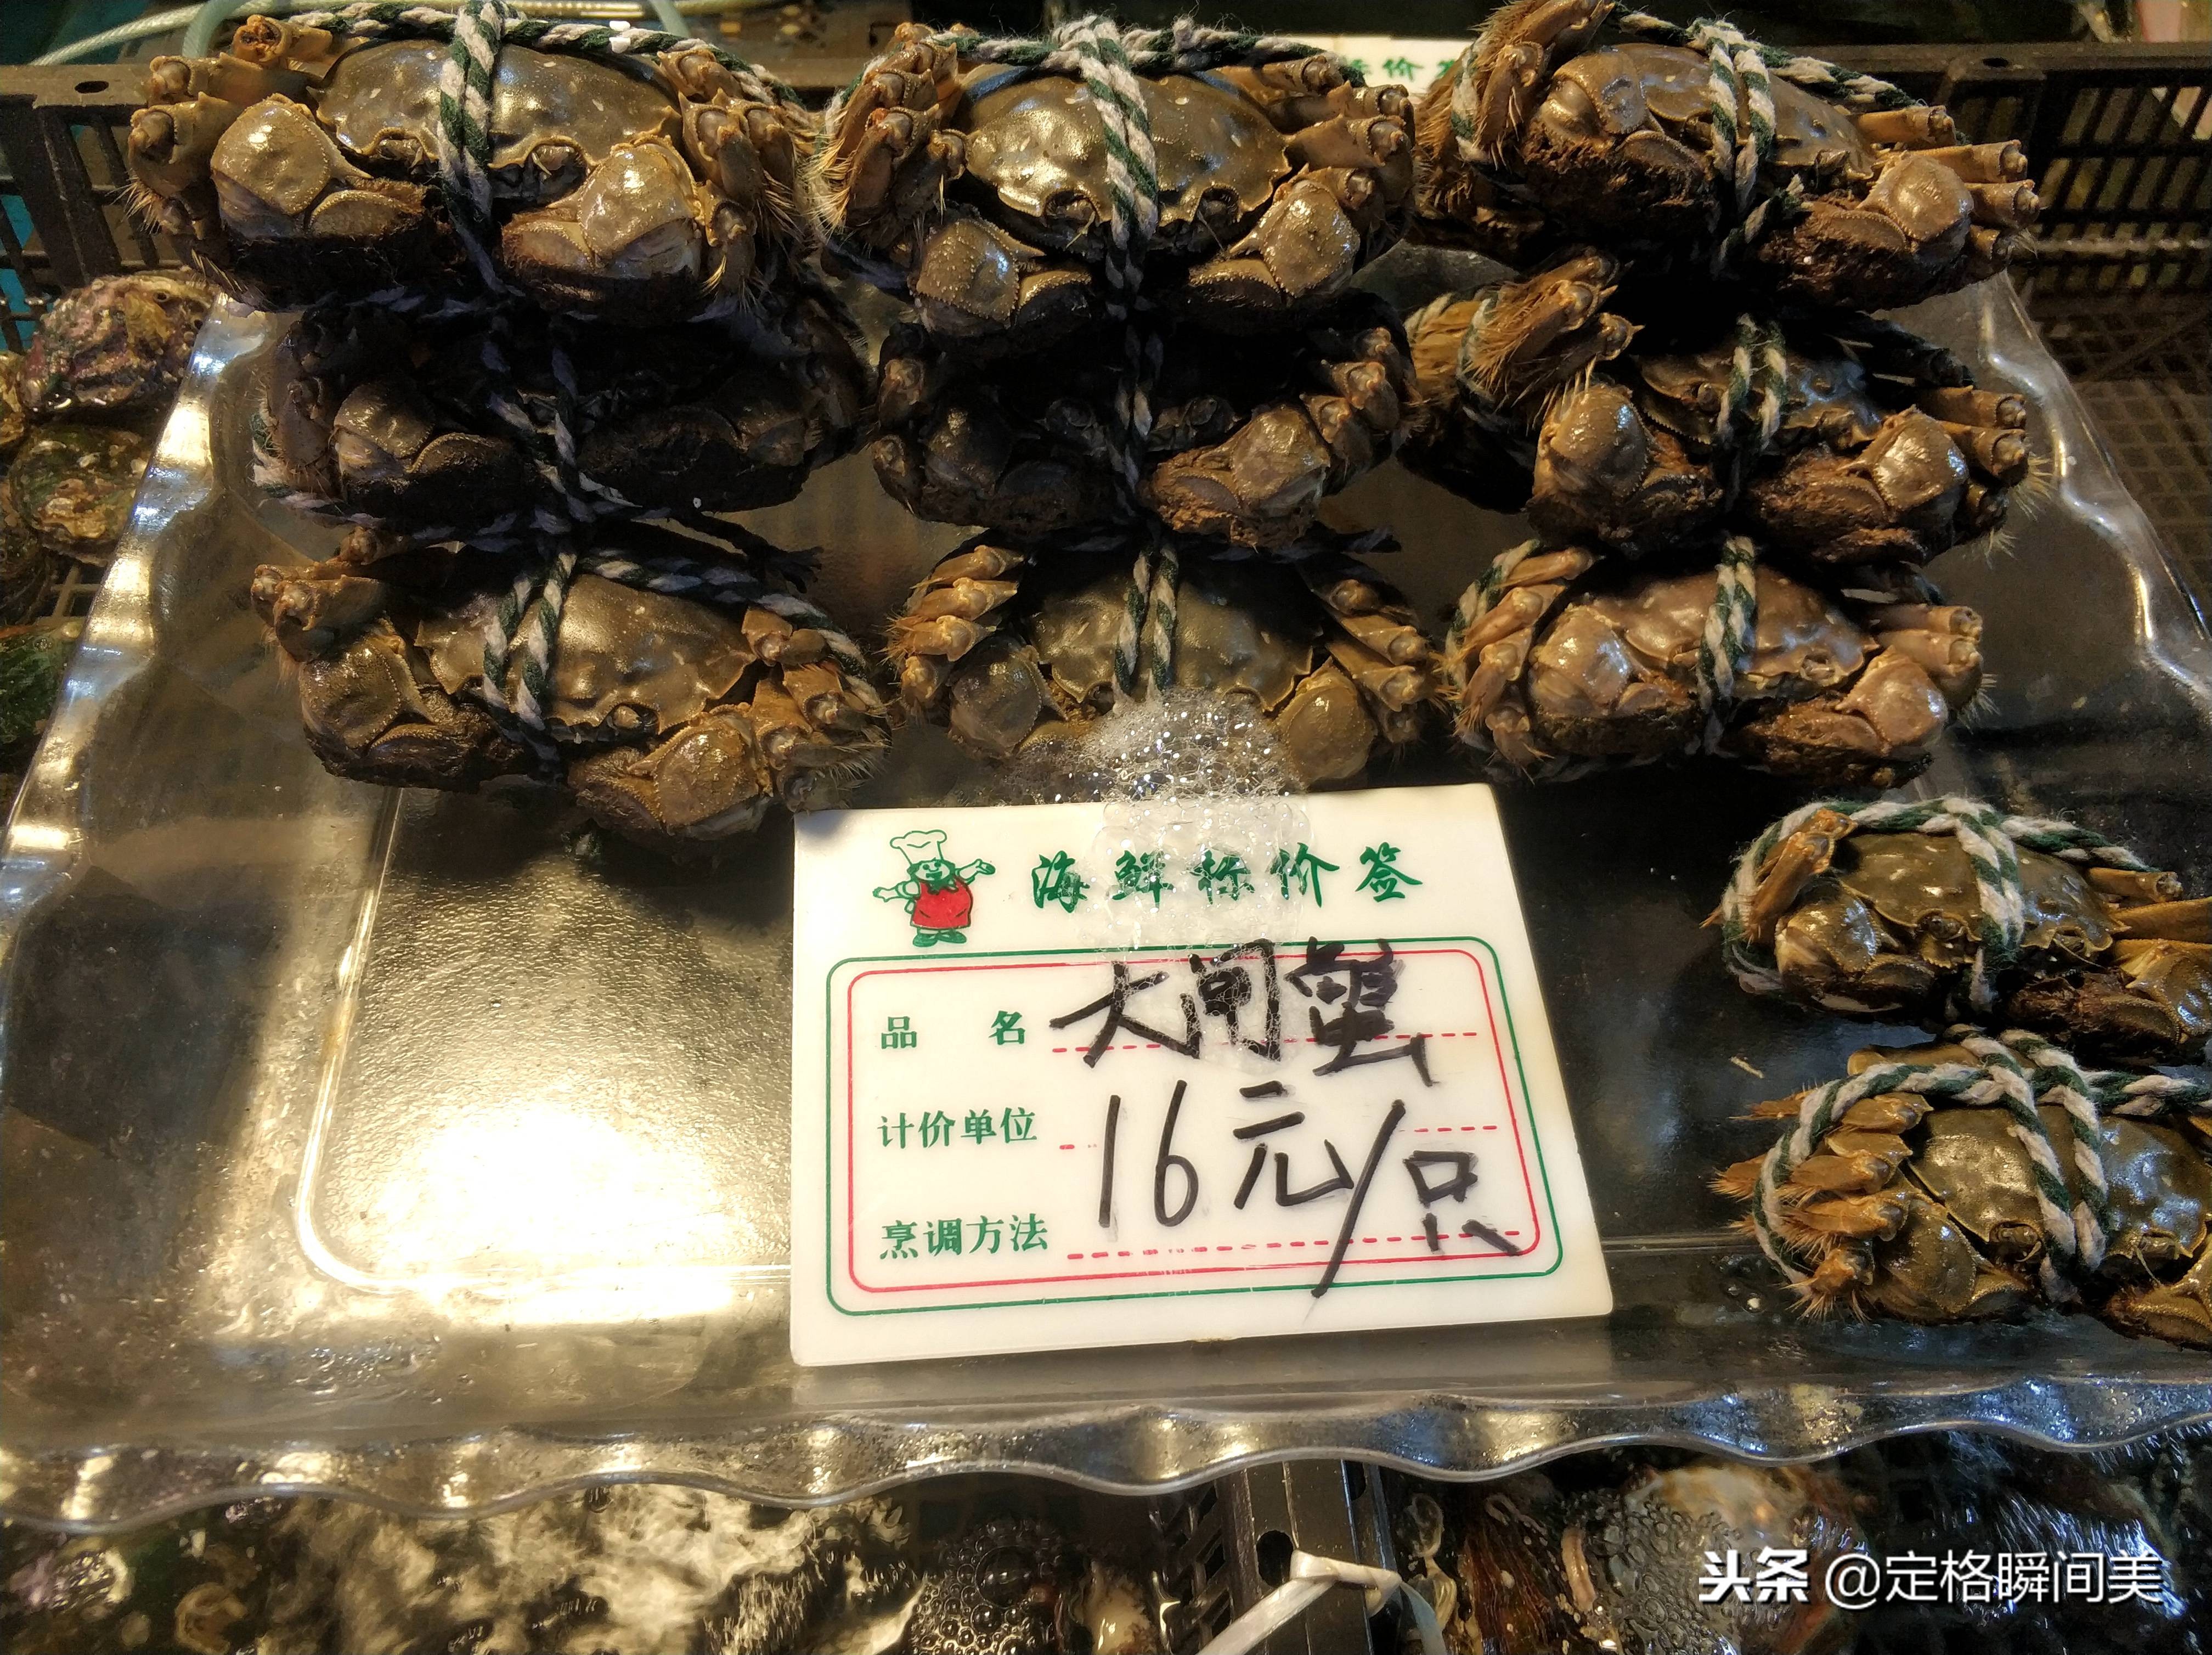 实拍冬季青岛海货市场 黑头鱼30元一斤 大闸蟹16元一只 种类齐全